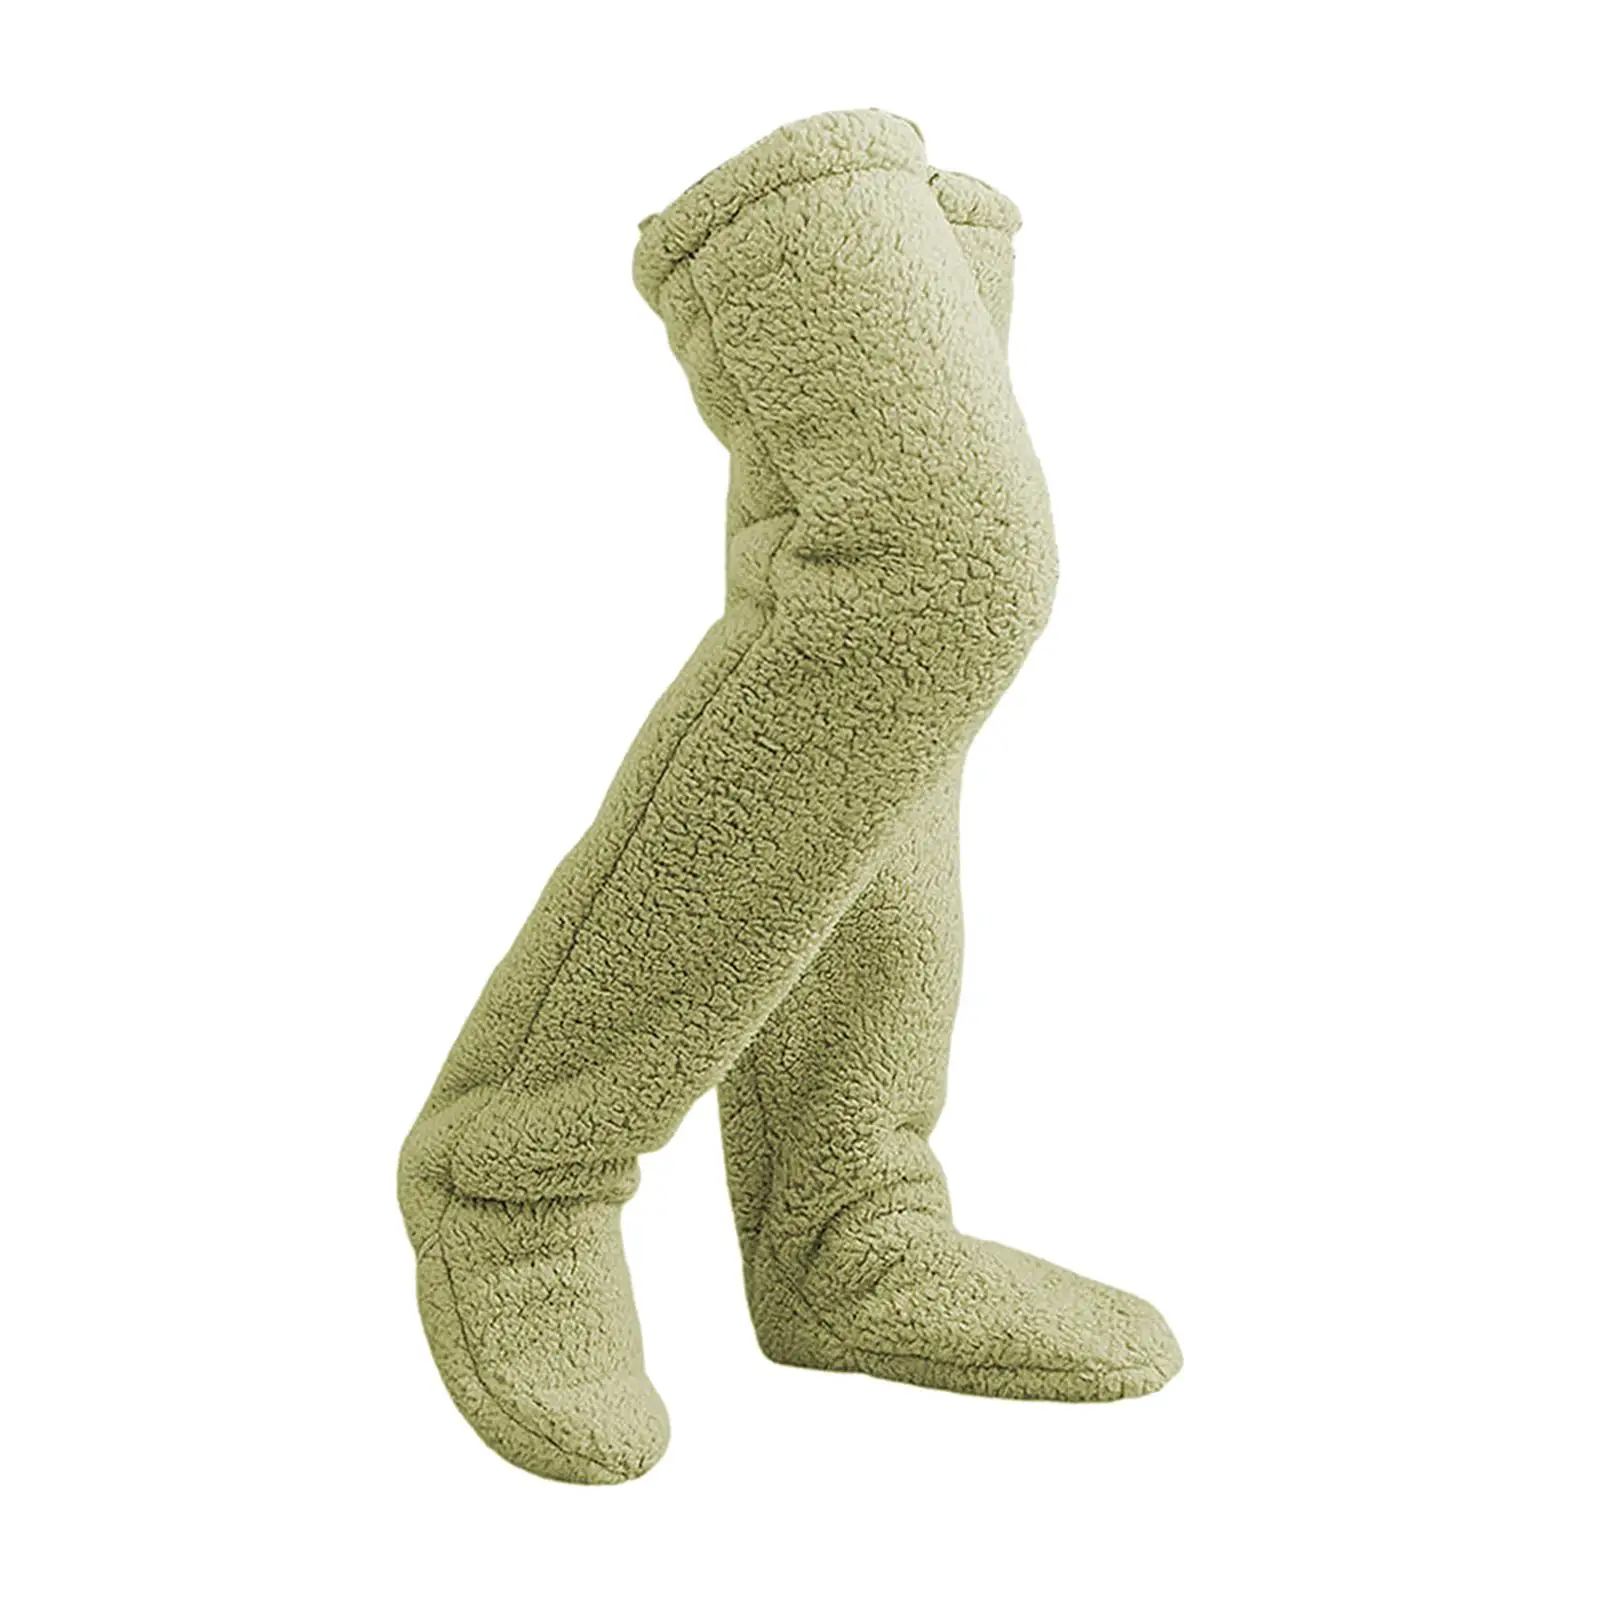 Plush Leg Warmers Soft Long Tube Knee Socks Thigh High Socks Slipper Stockings Over Knee Fuzzy Socks for Dorm Apartment Bedroom